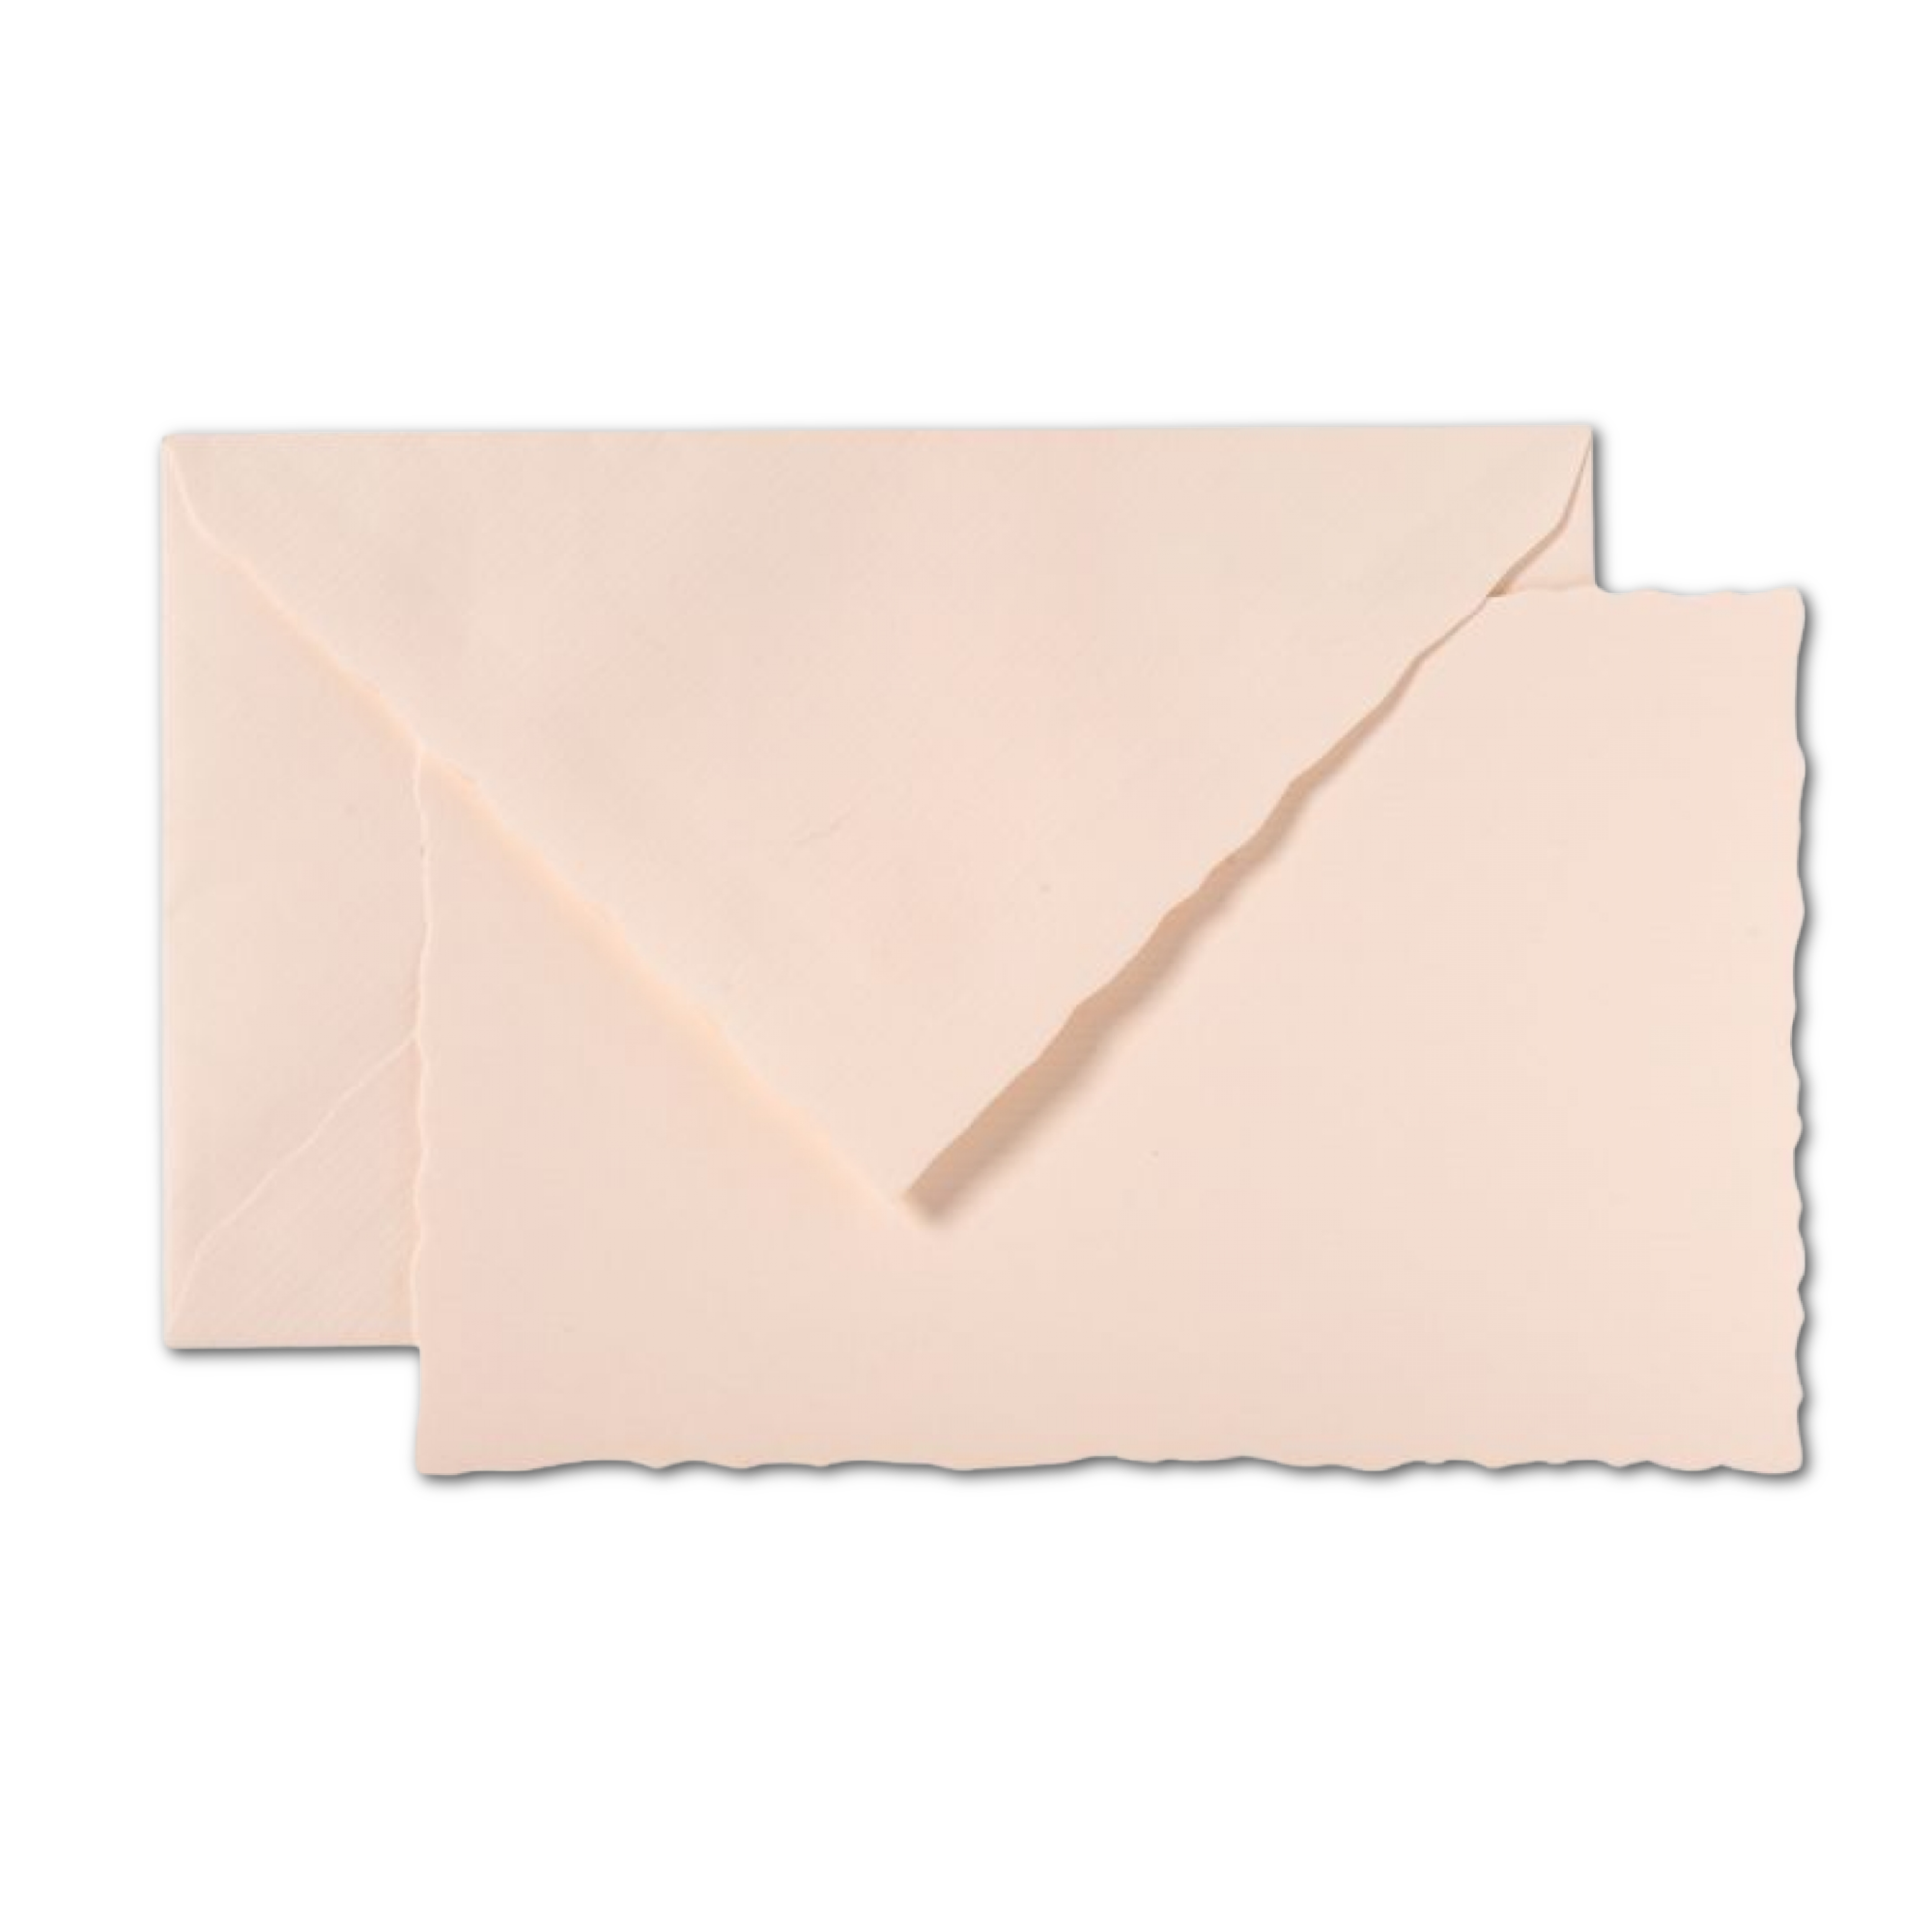 G. Lalo "Verge de France" Card & Envelope Set / Rose